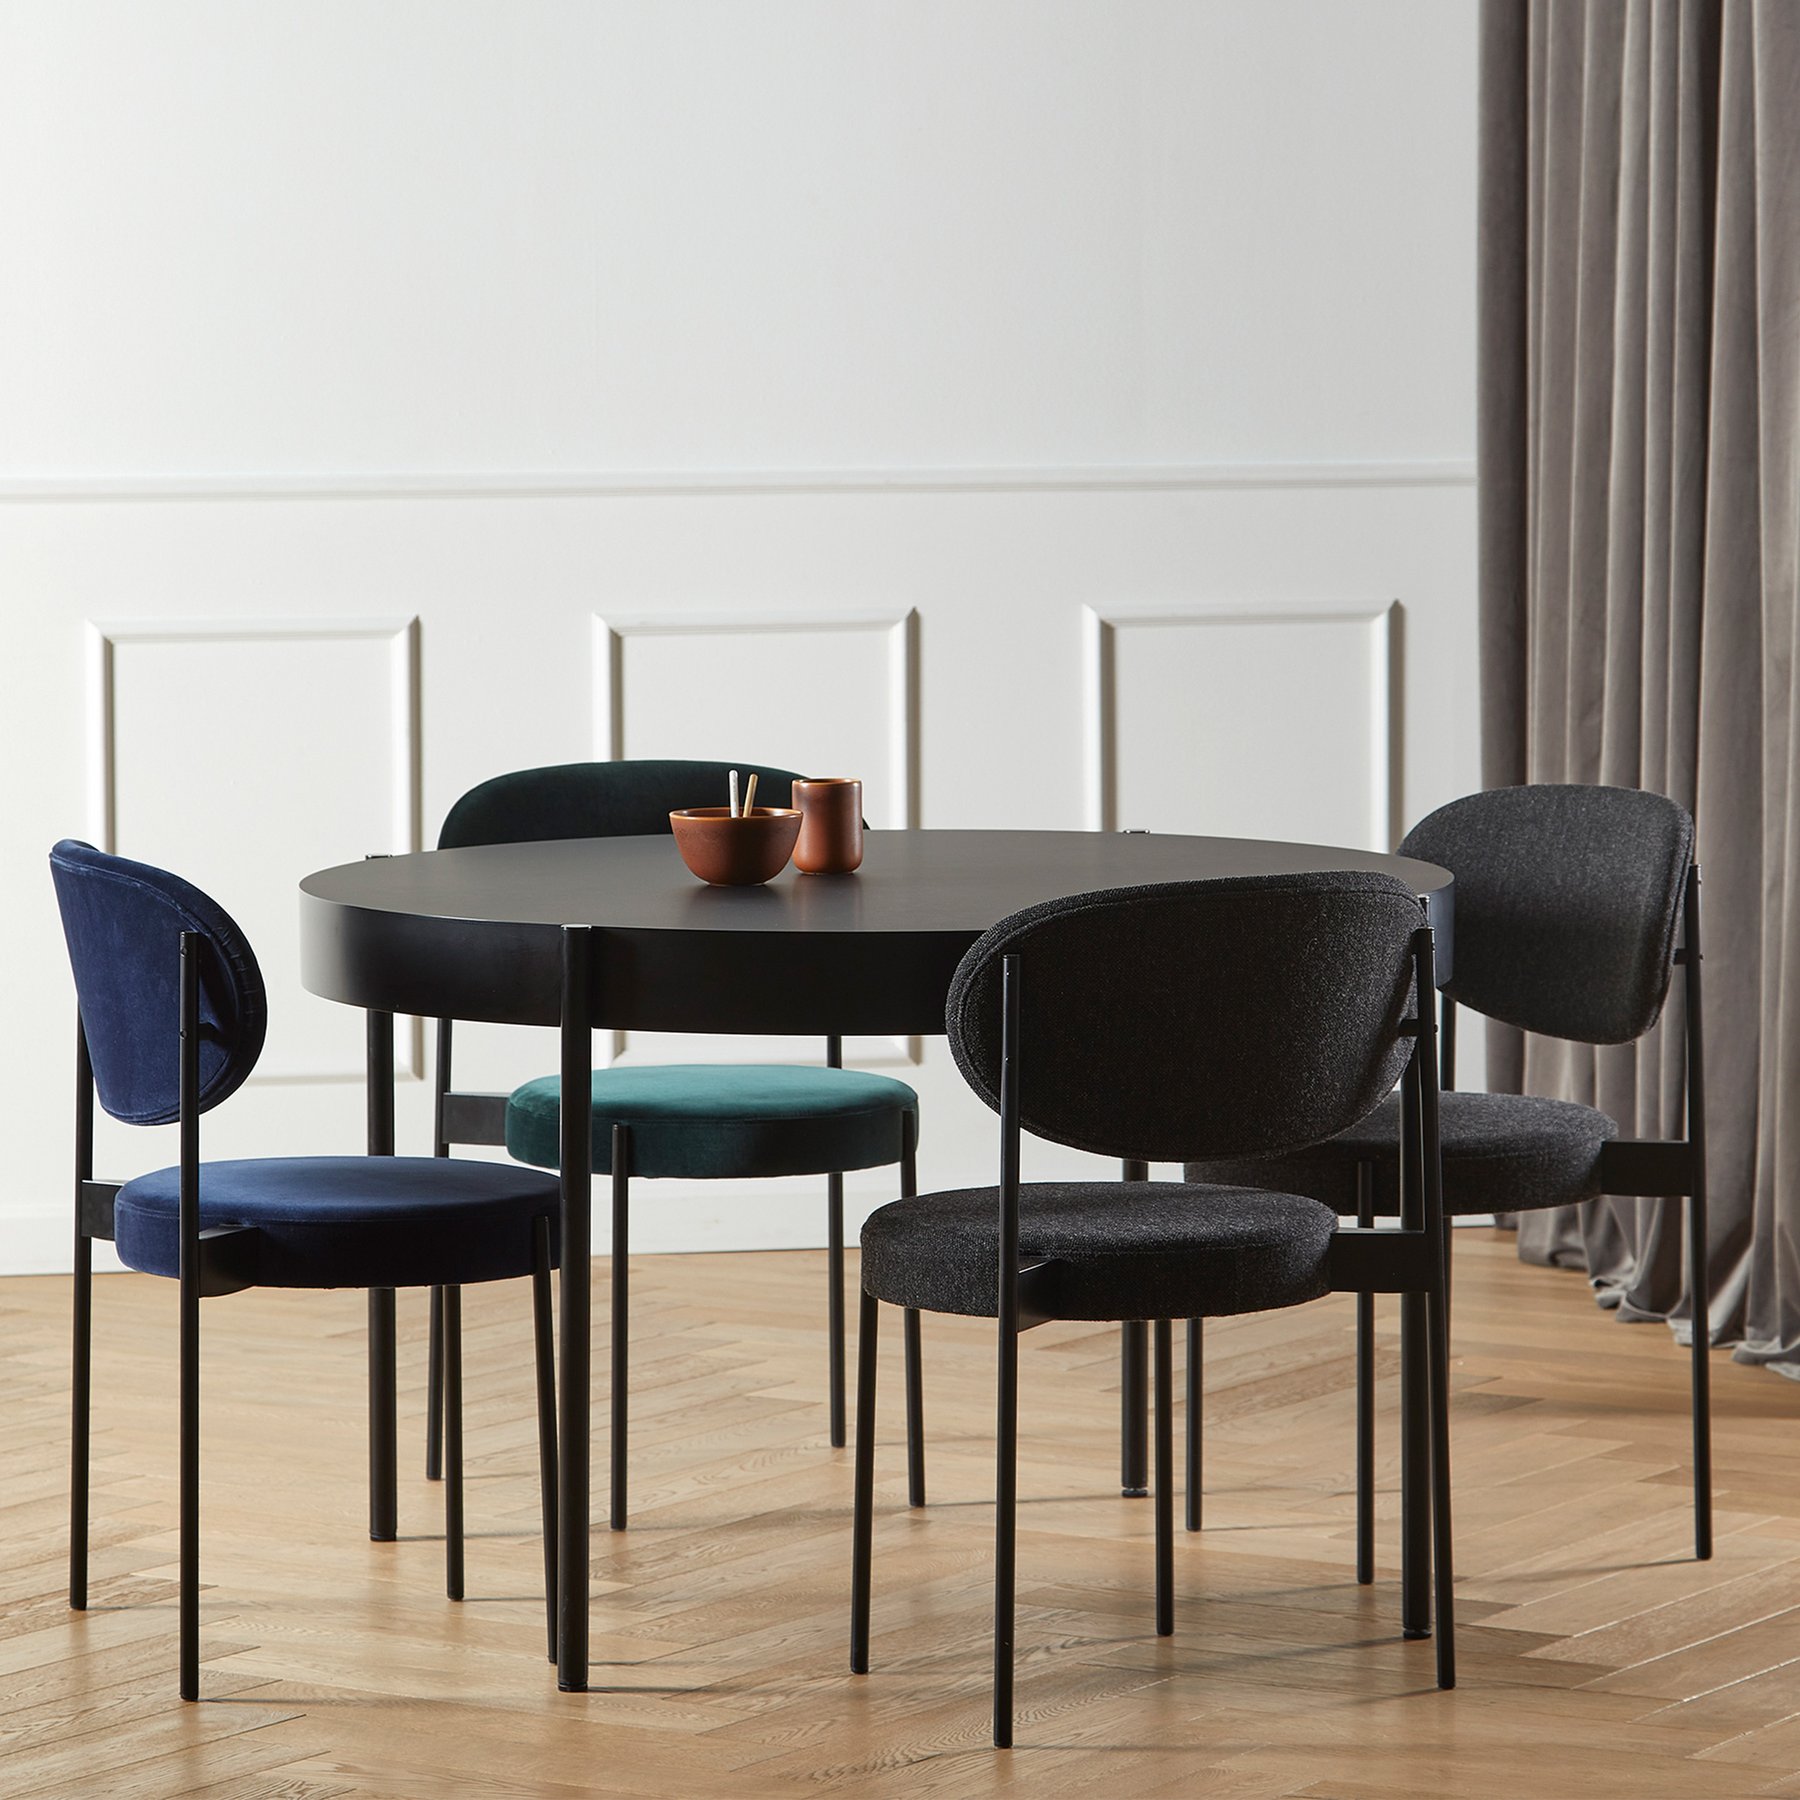 丹麦家具Verpan的SERIES 430 CHAIR BLACK FRAME 餐椅  细节图